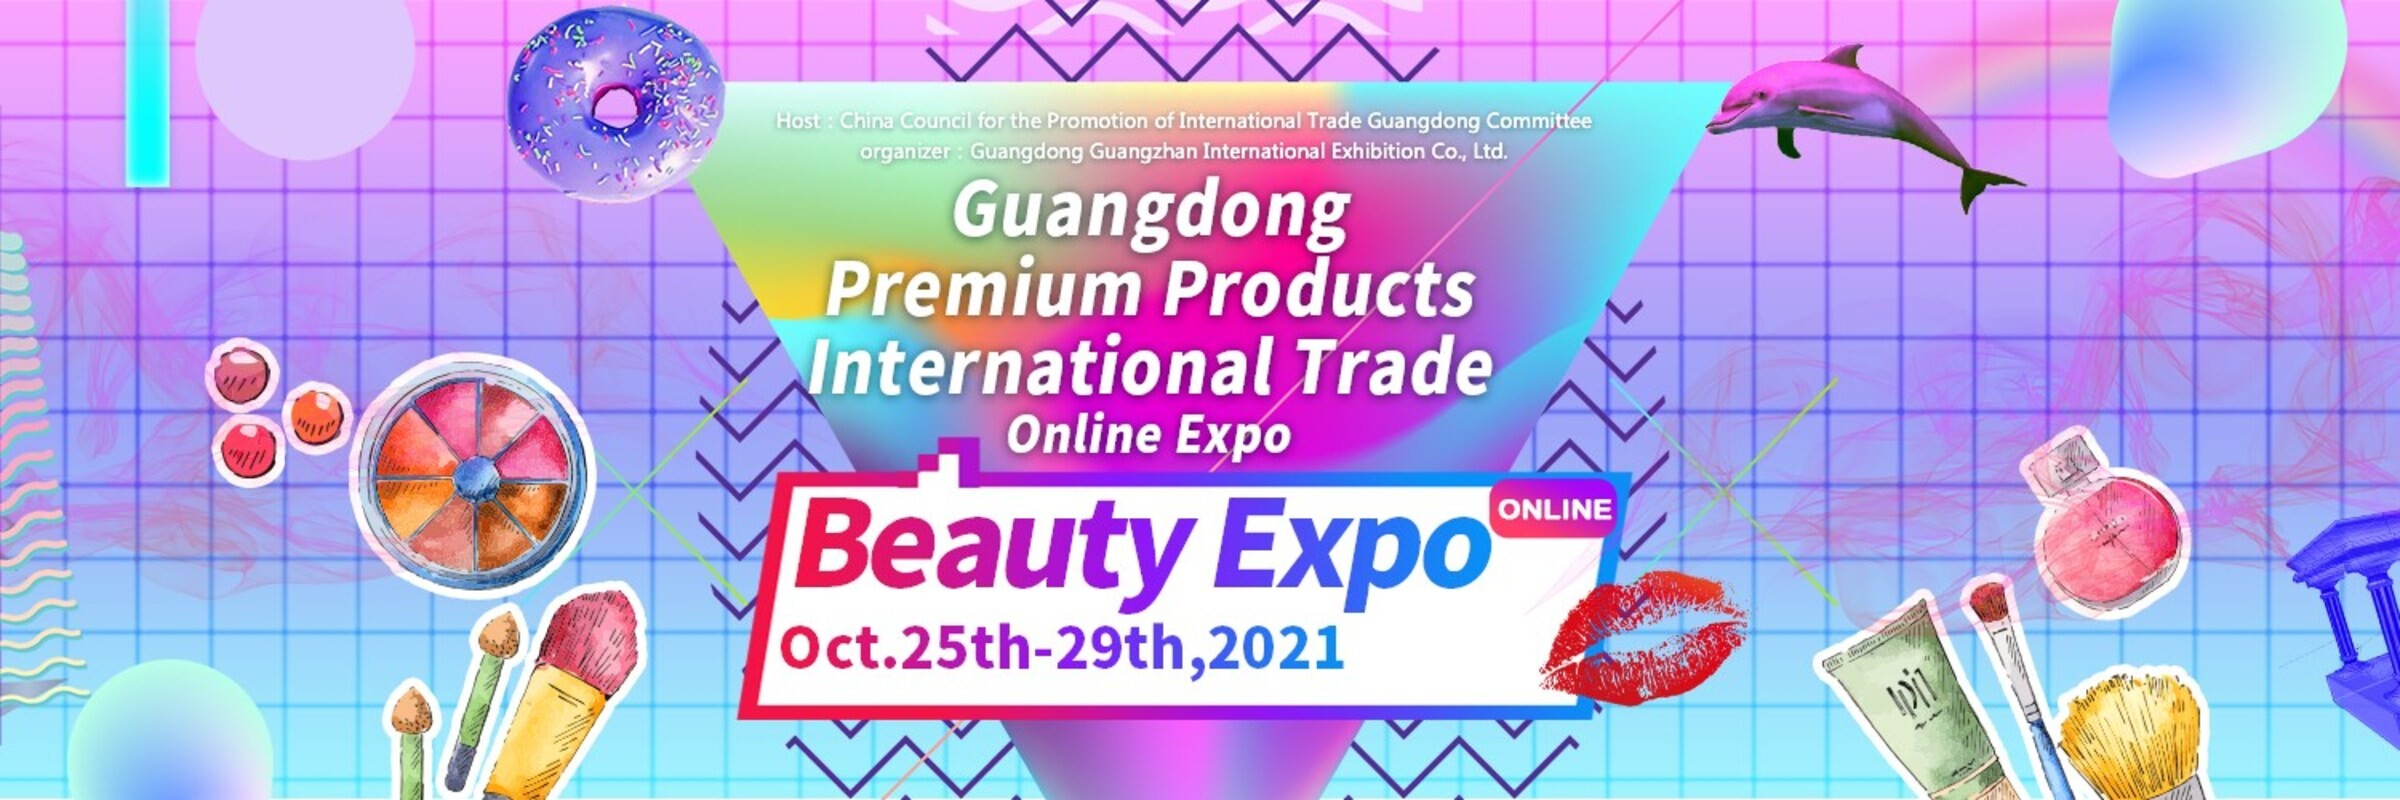 มหกรรมจัดแสดงสินค้าความงามสุดยิ่งใหญ่ Guangdong Premium Products International Trade Online Expo - Beauty Expo เปิดฉากแล้ววันนี้